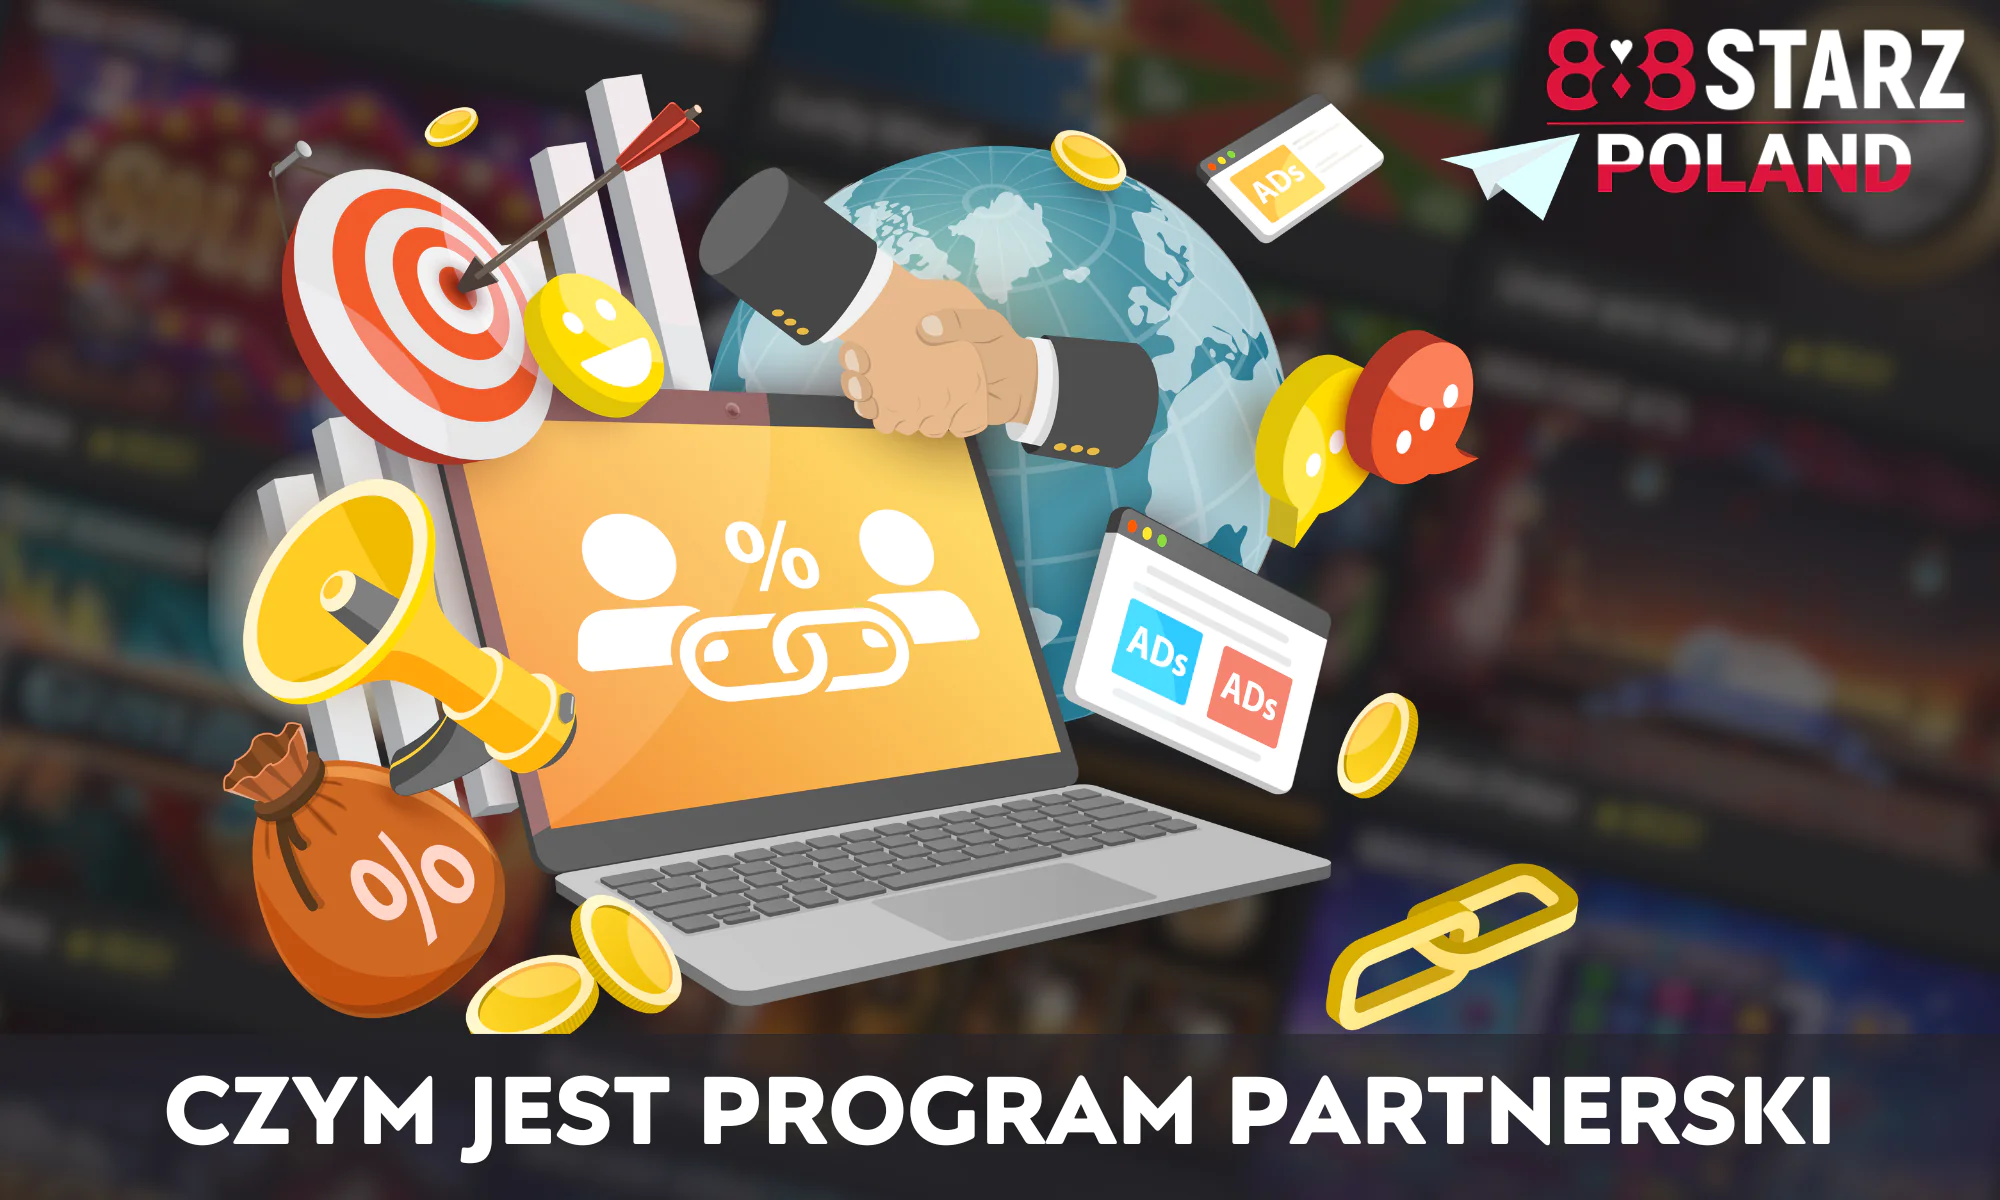 888Starz posiada bardzo rozwinięty i dochodowy program partnerski